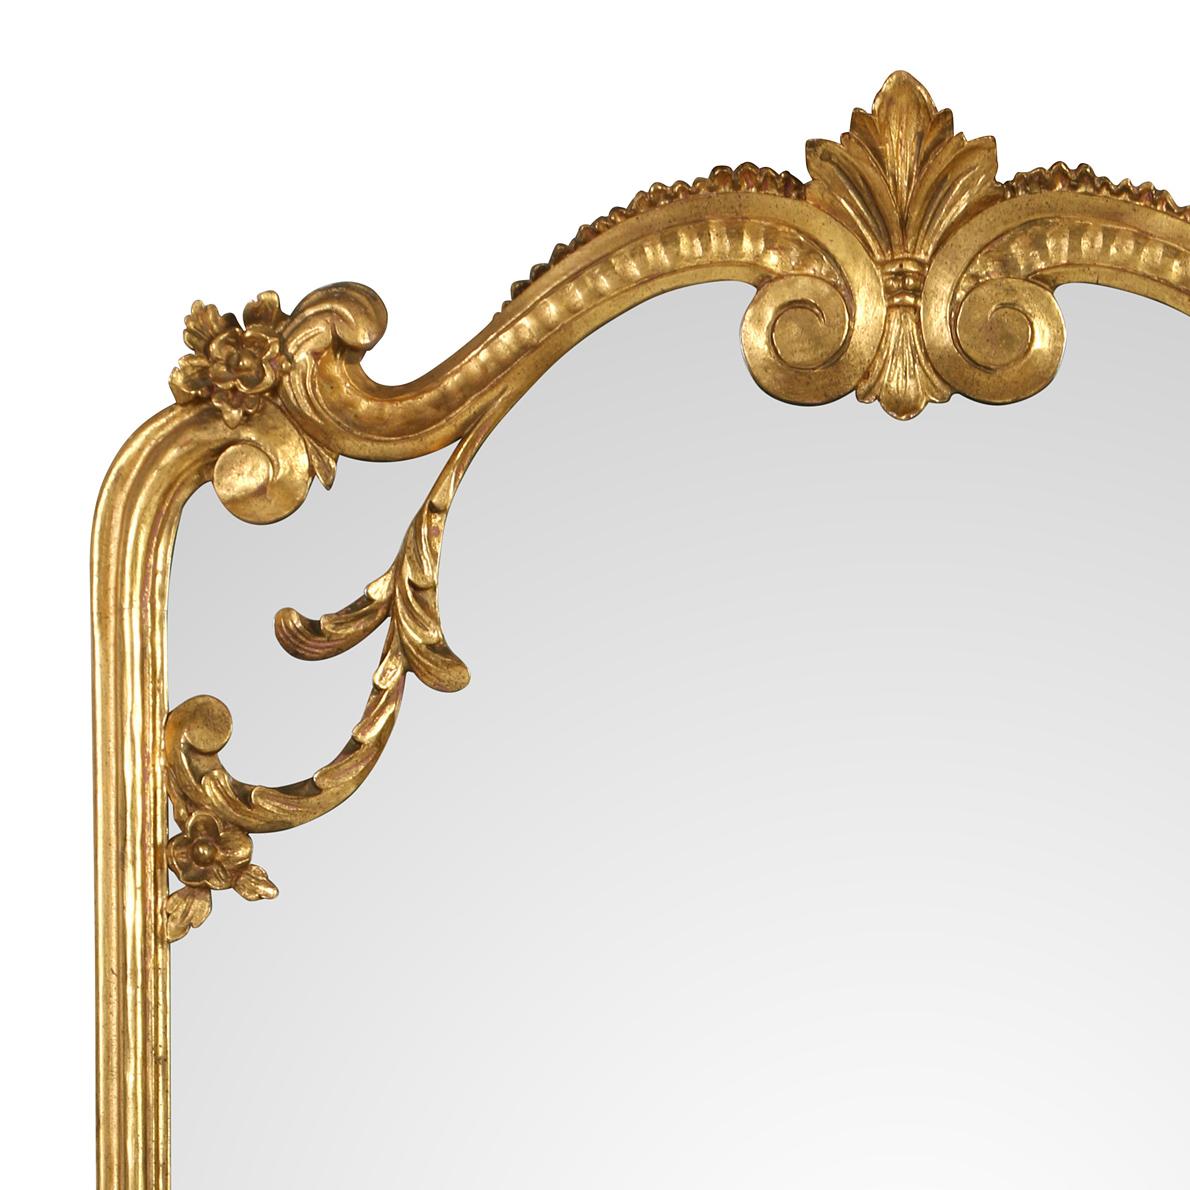 Miroir rectangulaire en bois doré avec un plateau incurvé.  Bien que de taille importante, le miroir est léger et aéré.  Les côtés sont moulés et le dessus et la base sont joliment sculptés dans le style rococo.  Ce joli miroir peut être utilisé